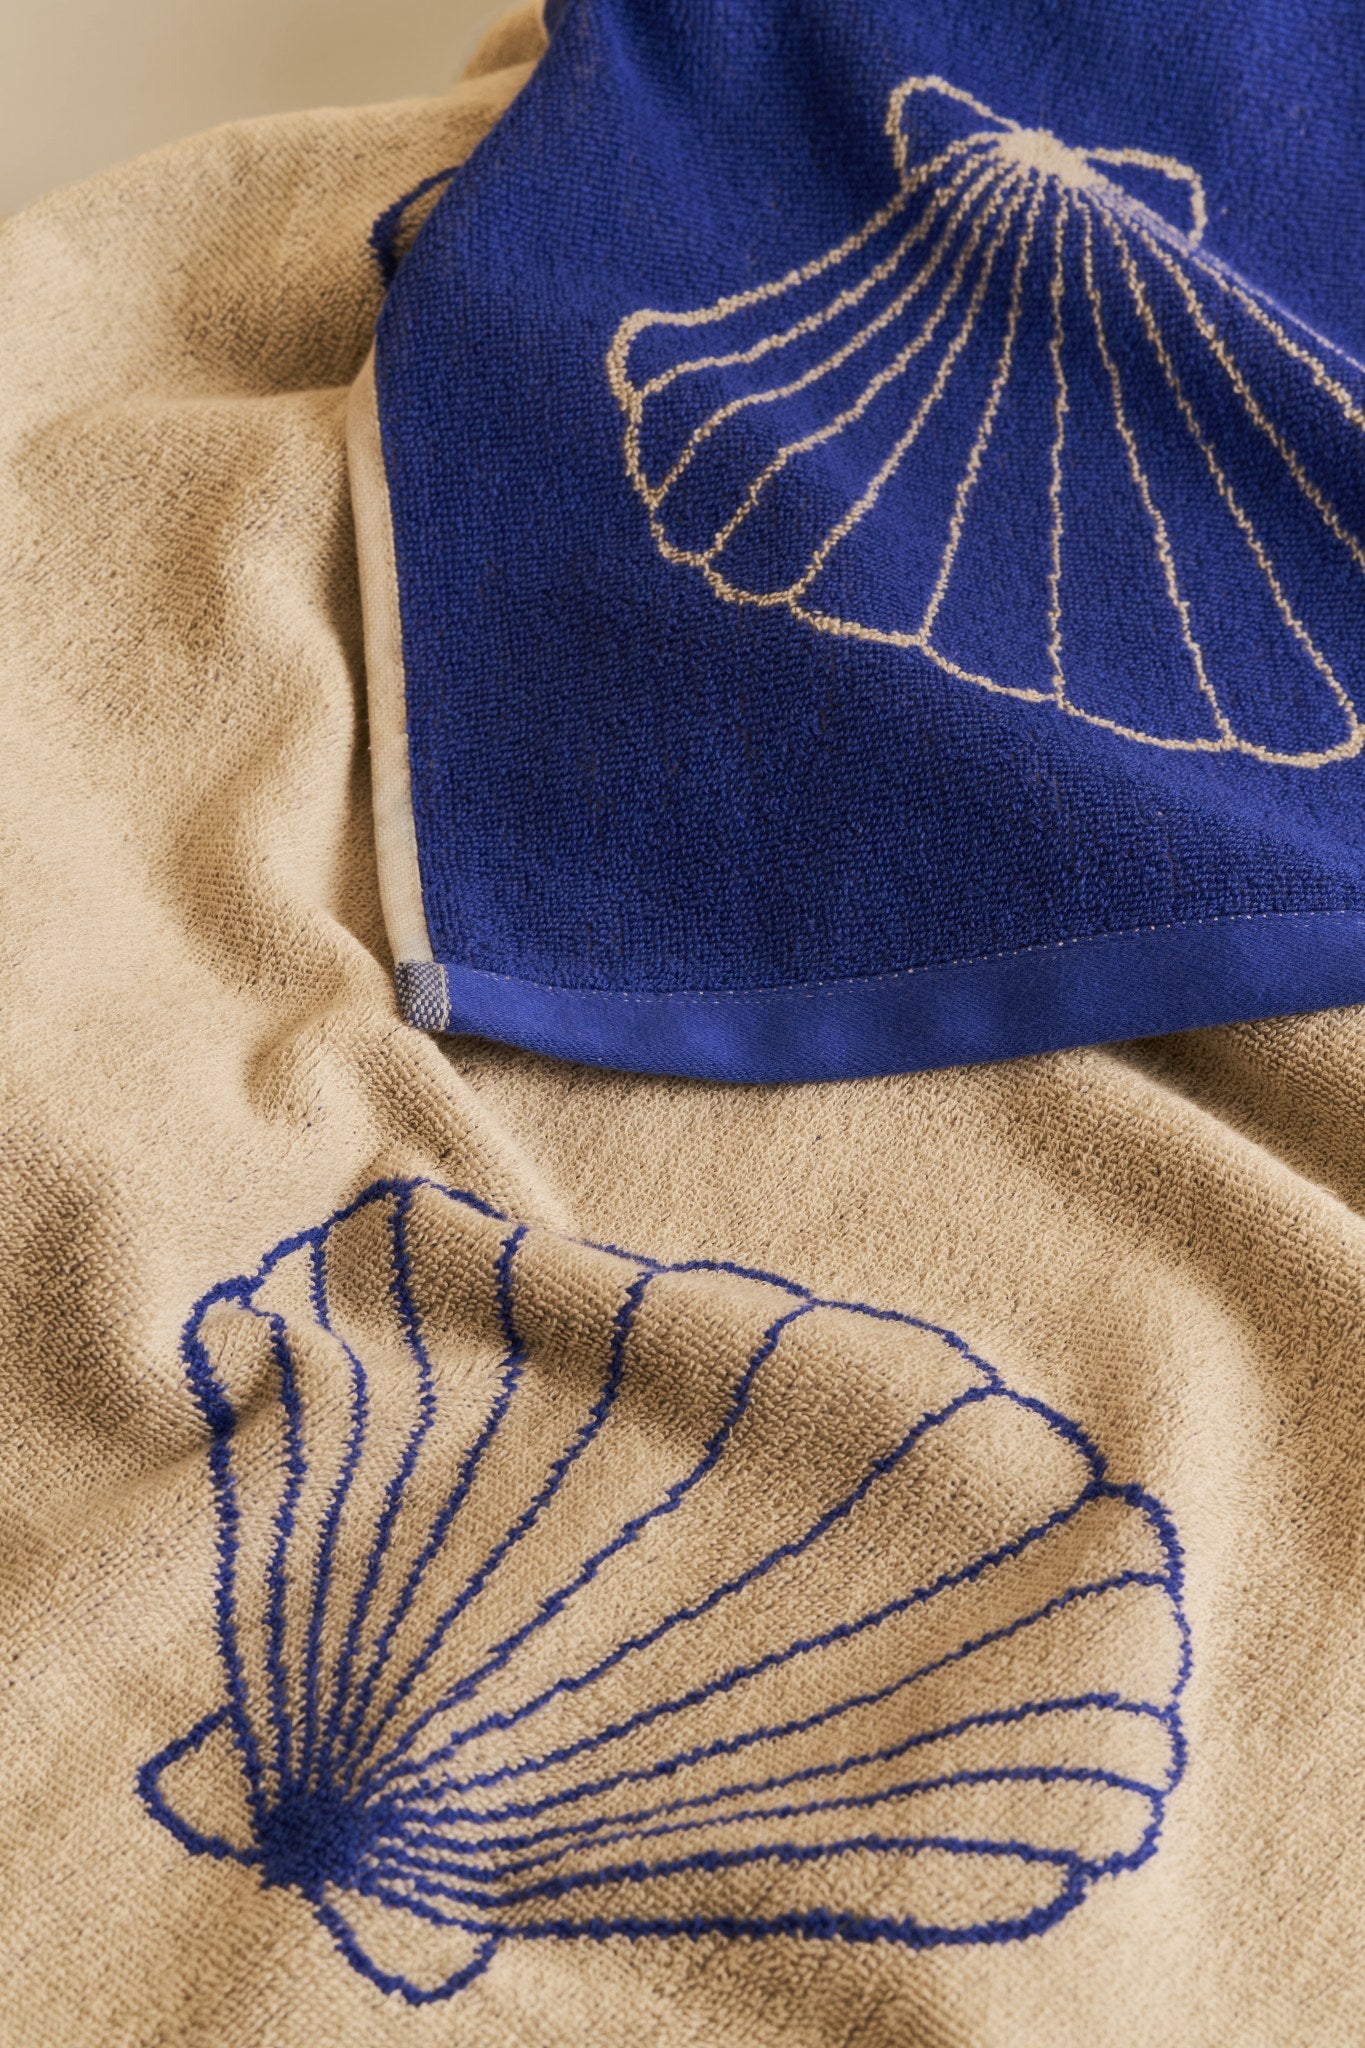 Shell maxi beach towel - Sand